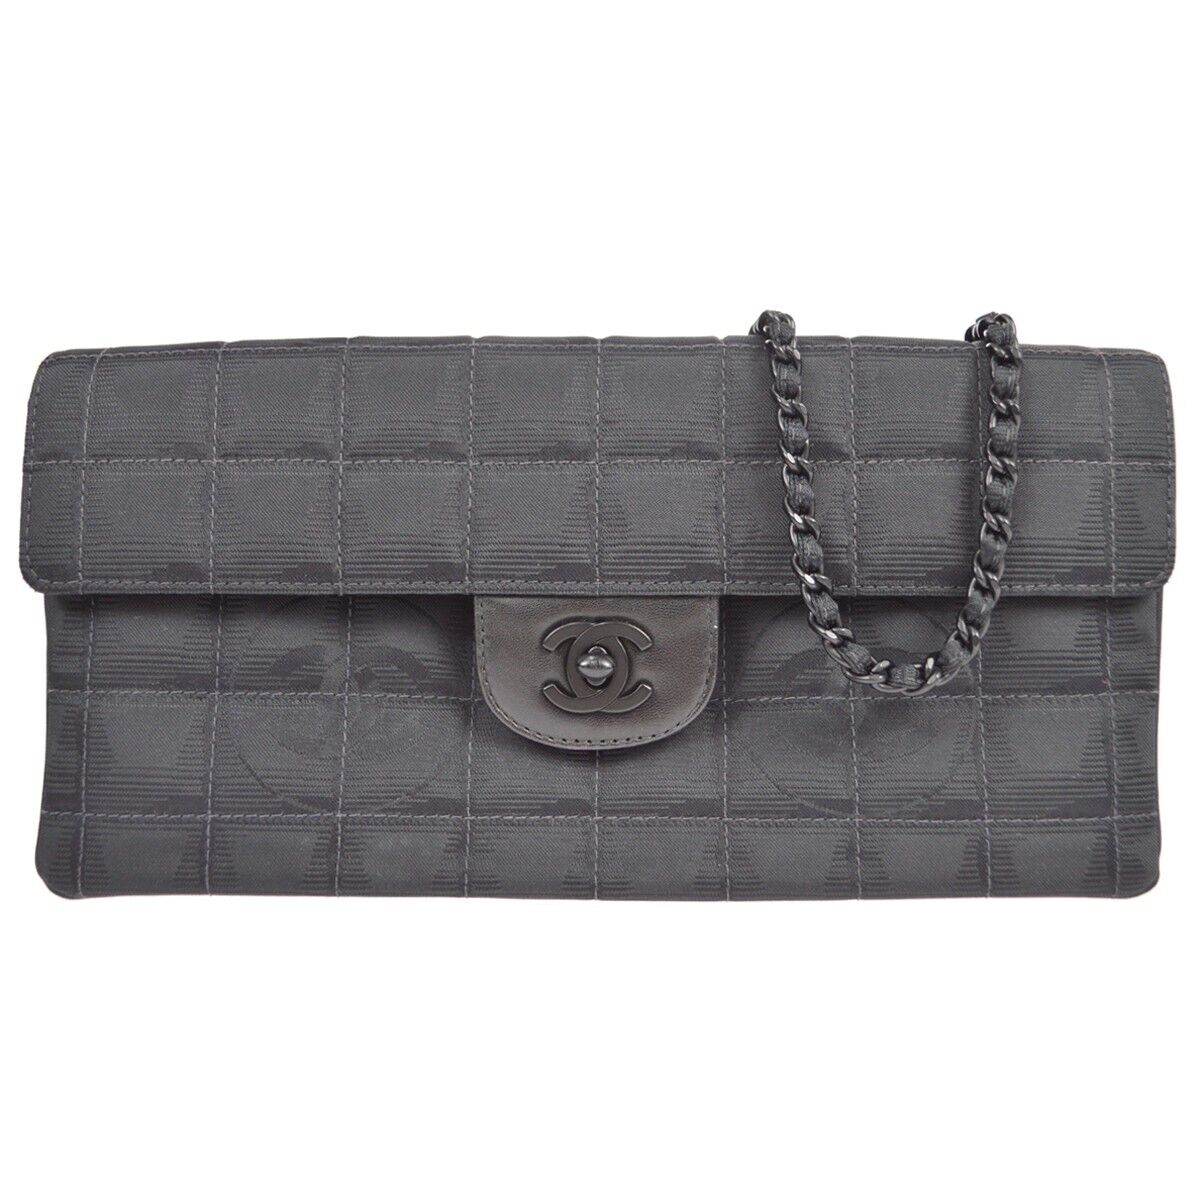 Chanel Black Jacquard East West Travel Line Chain Shoulder Bag 7259360 59534